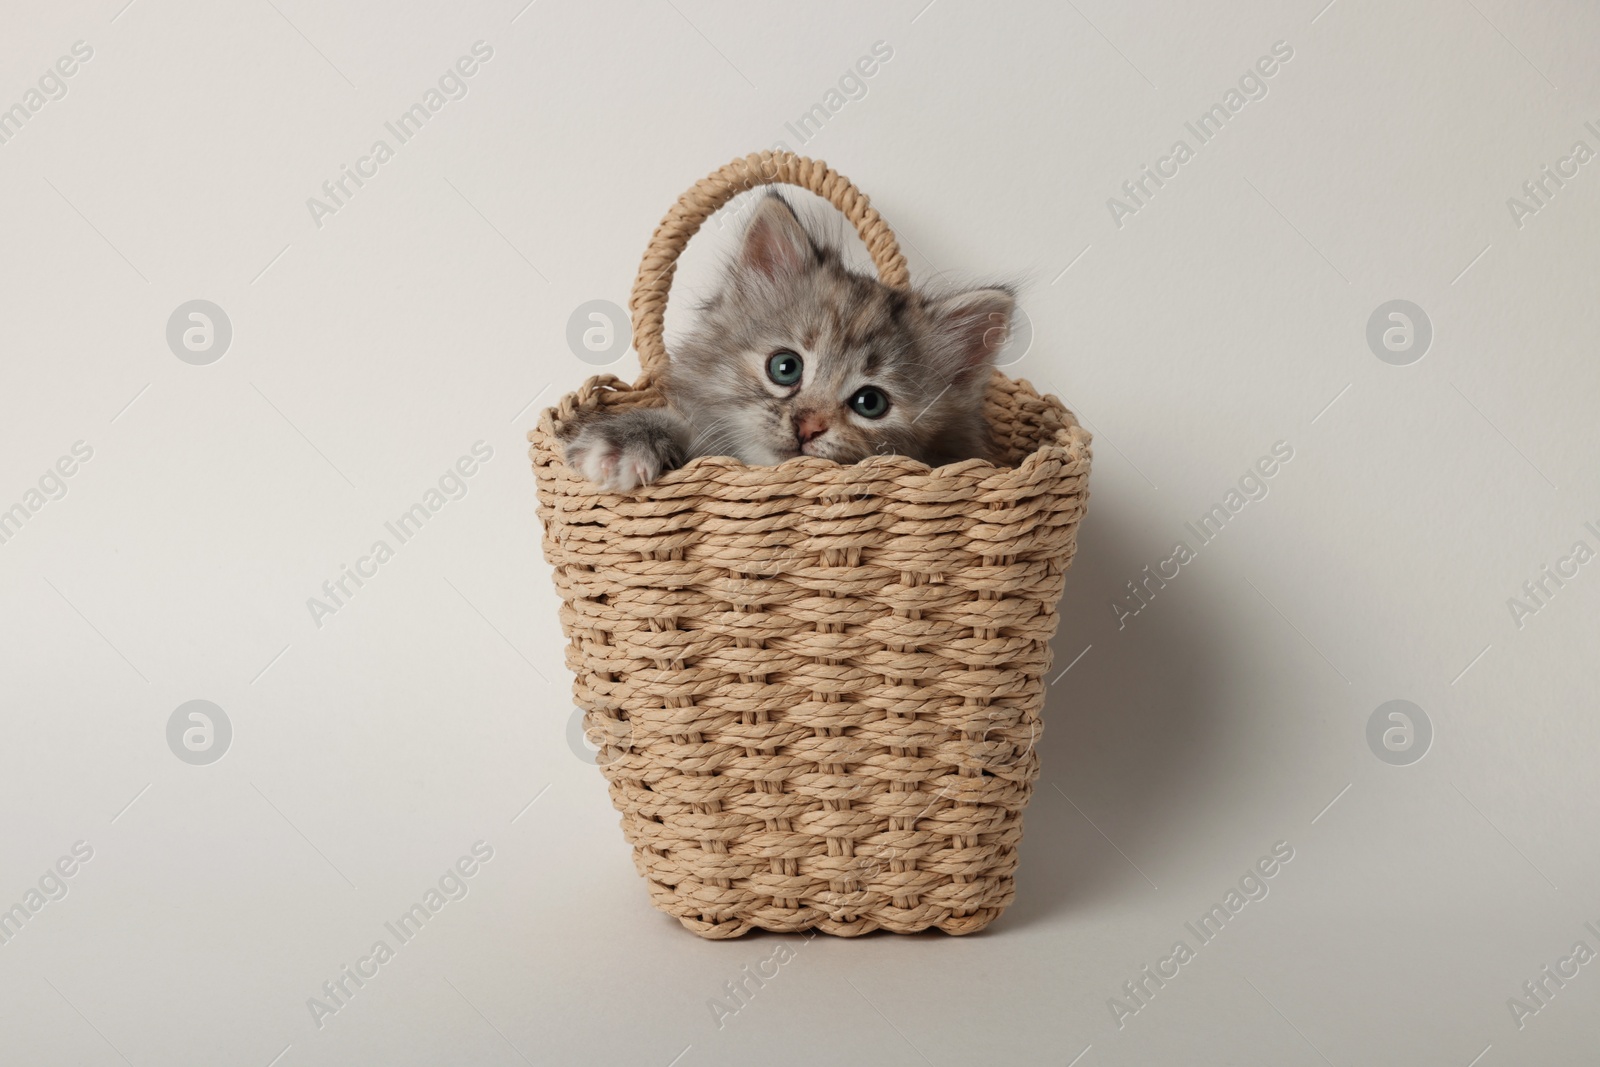 Photo of Cute kitten in wicker basket on light background